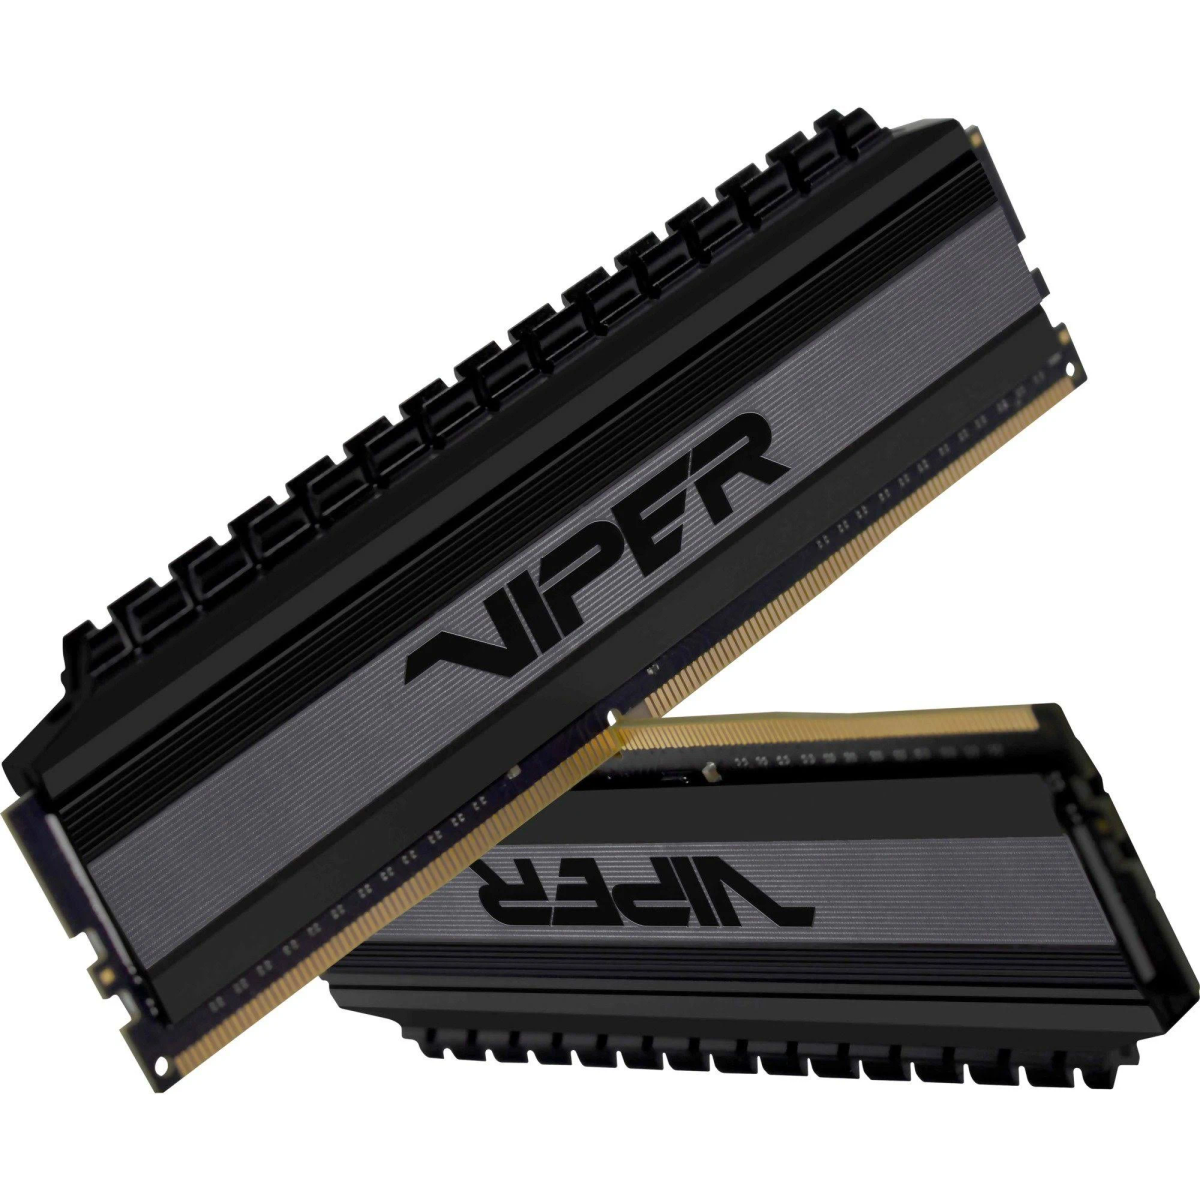 PATRIOT Viper Arbeitsspeicher DDR4 Blackout GB 4133MHz 16GB 16 4